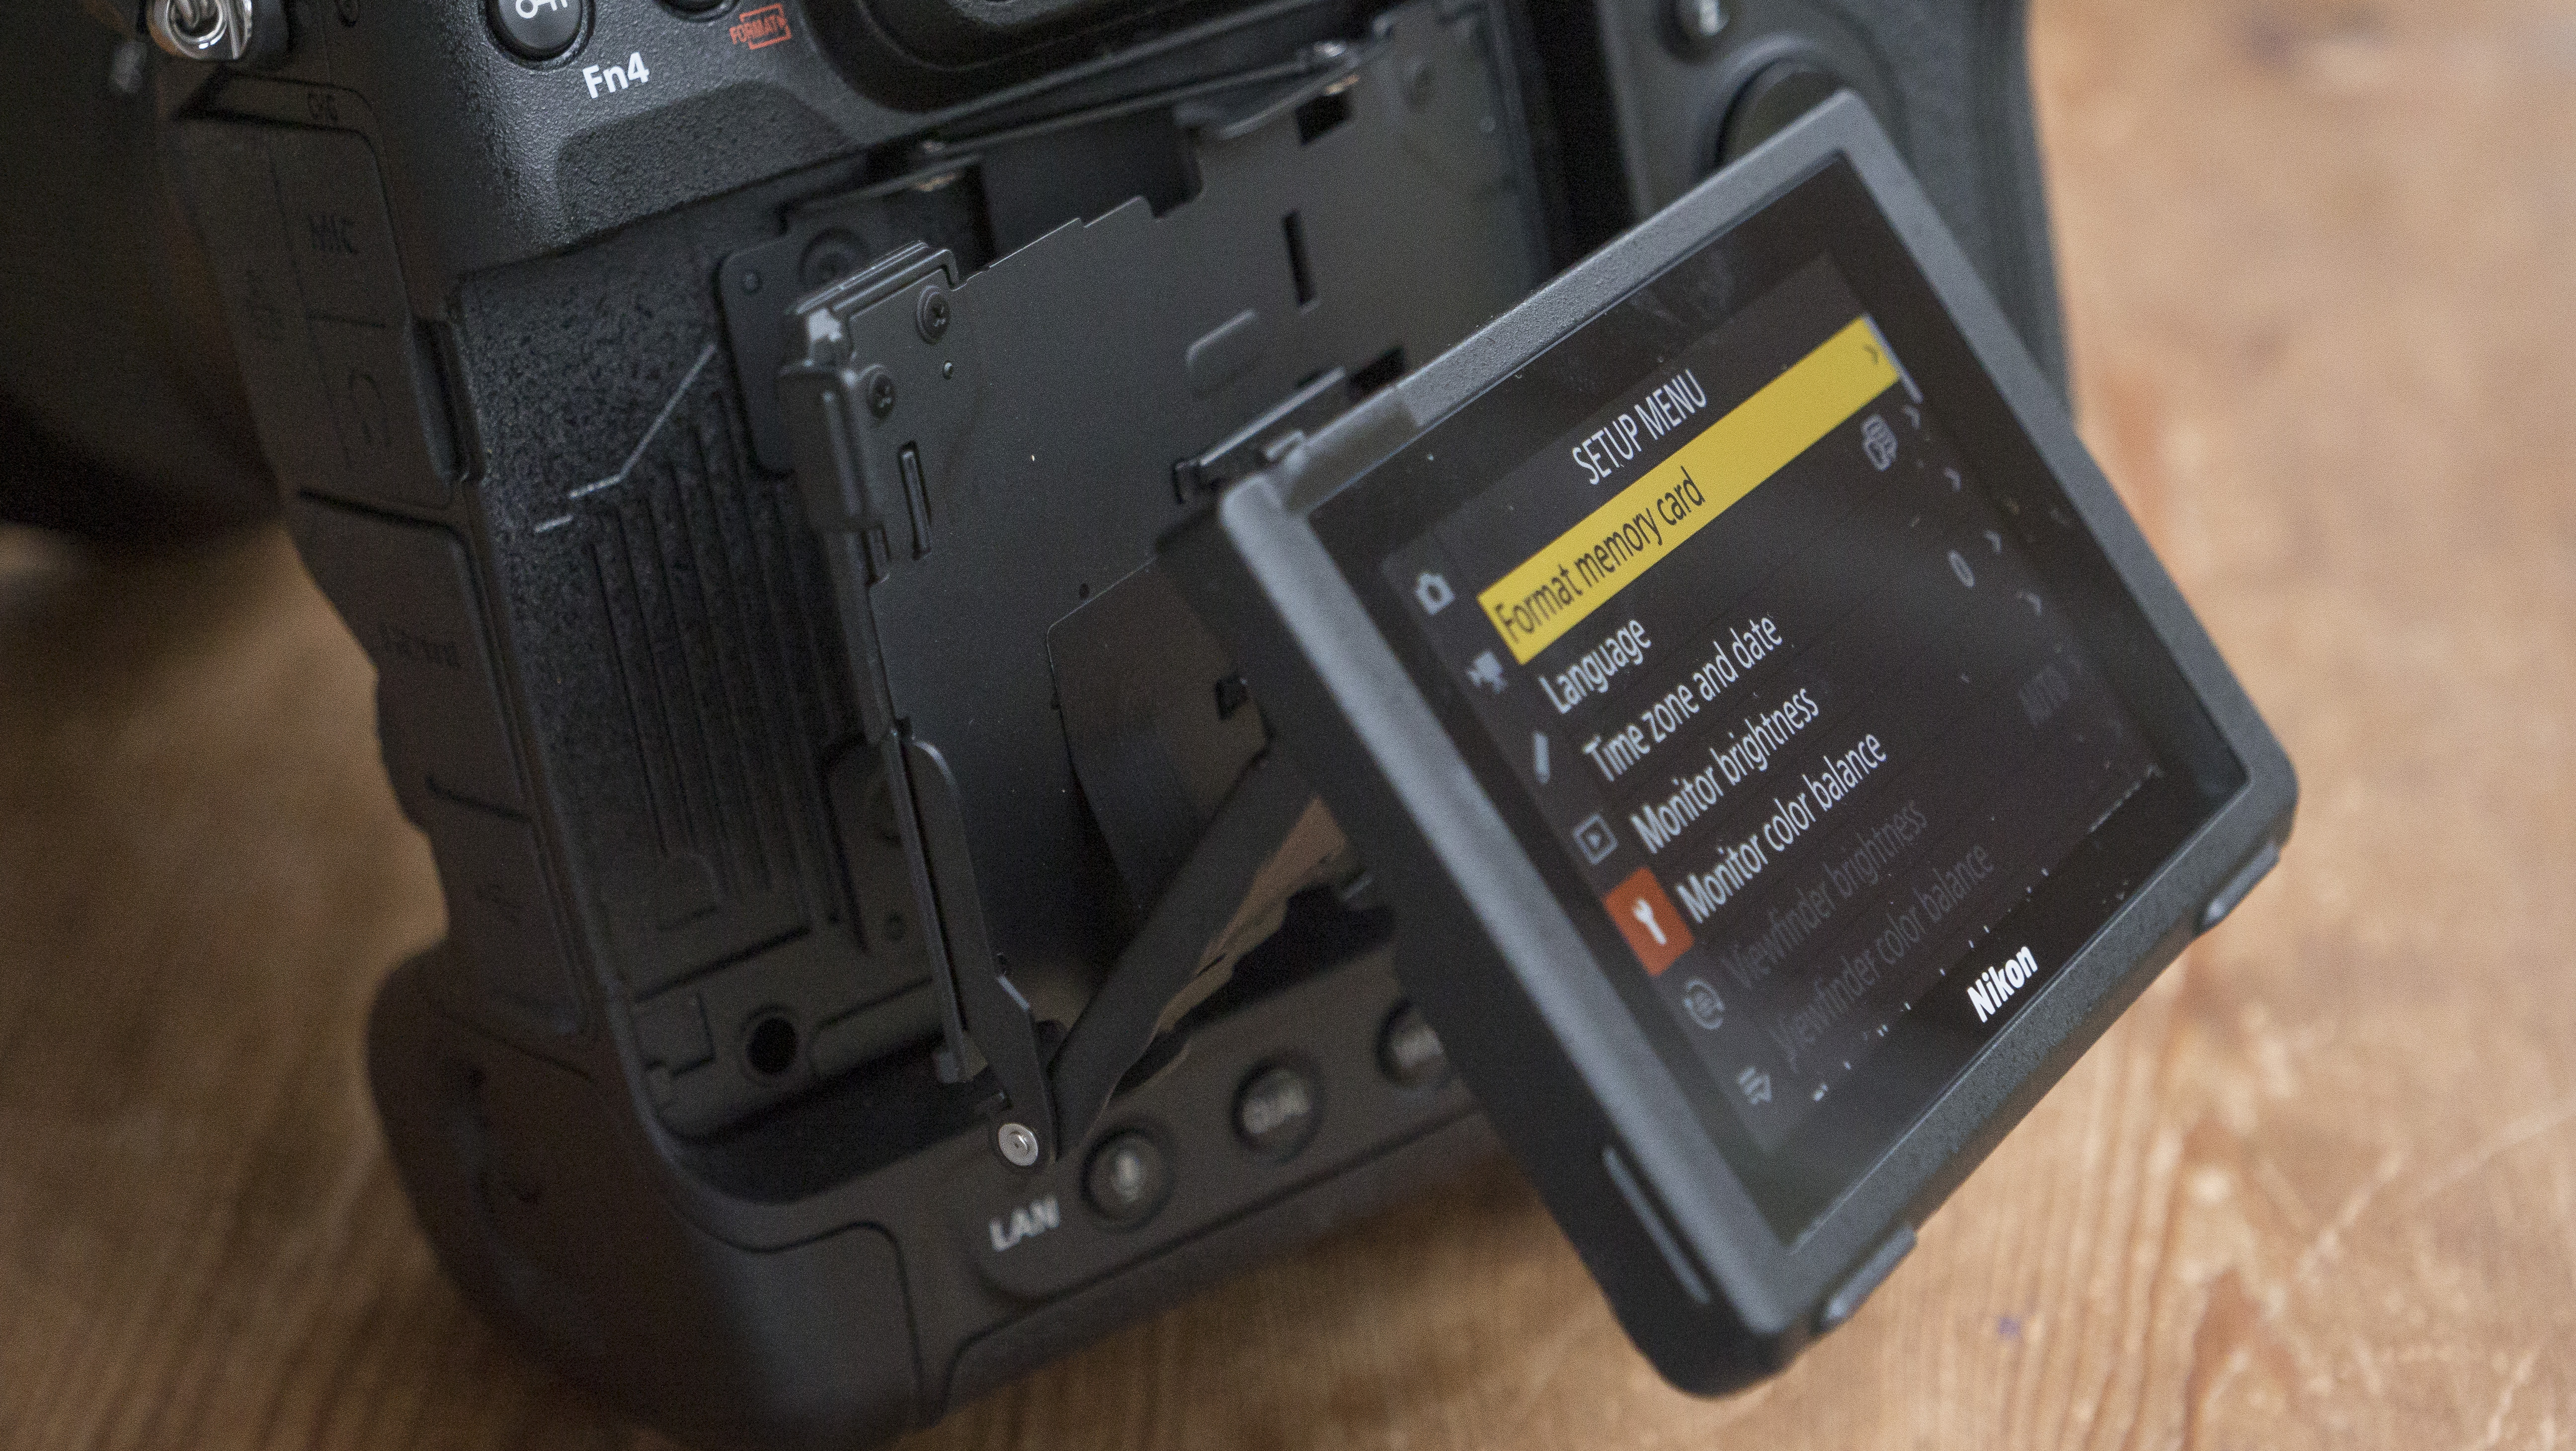  Наклонный экран камеры Nikon Z9